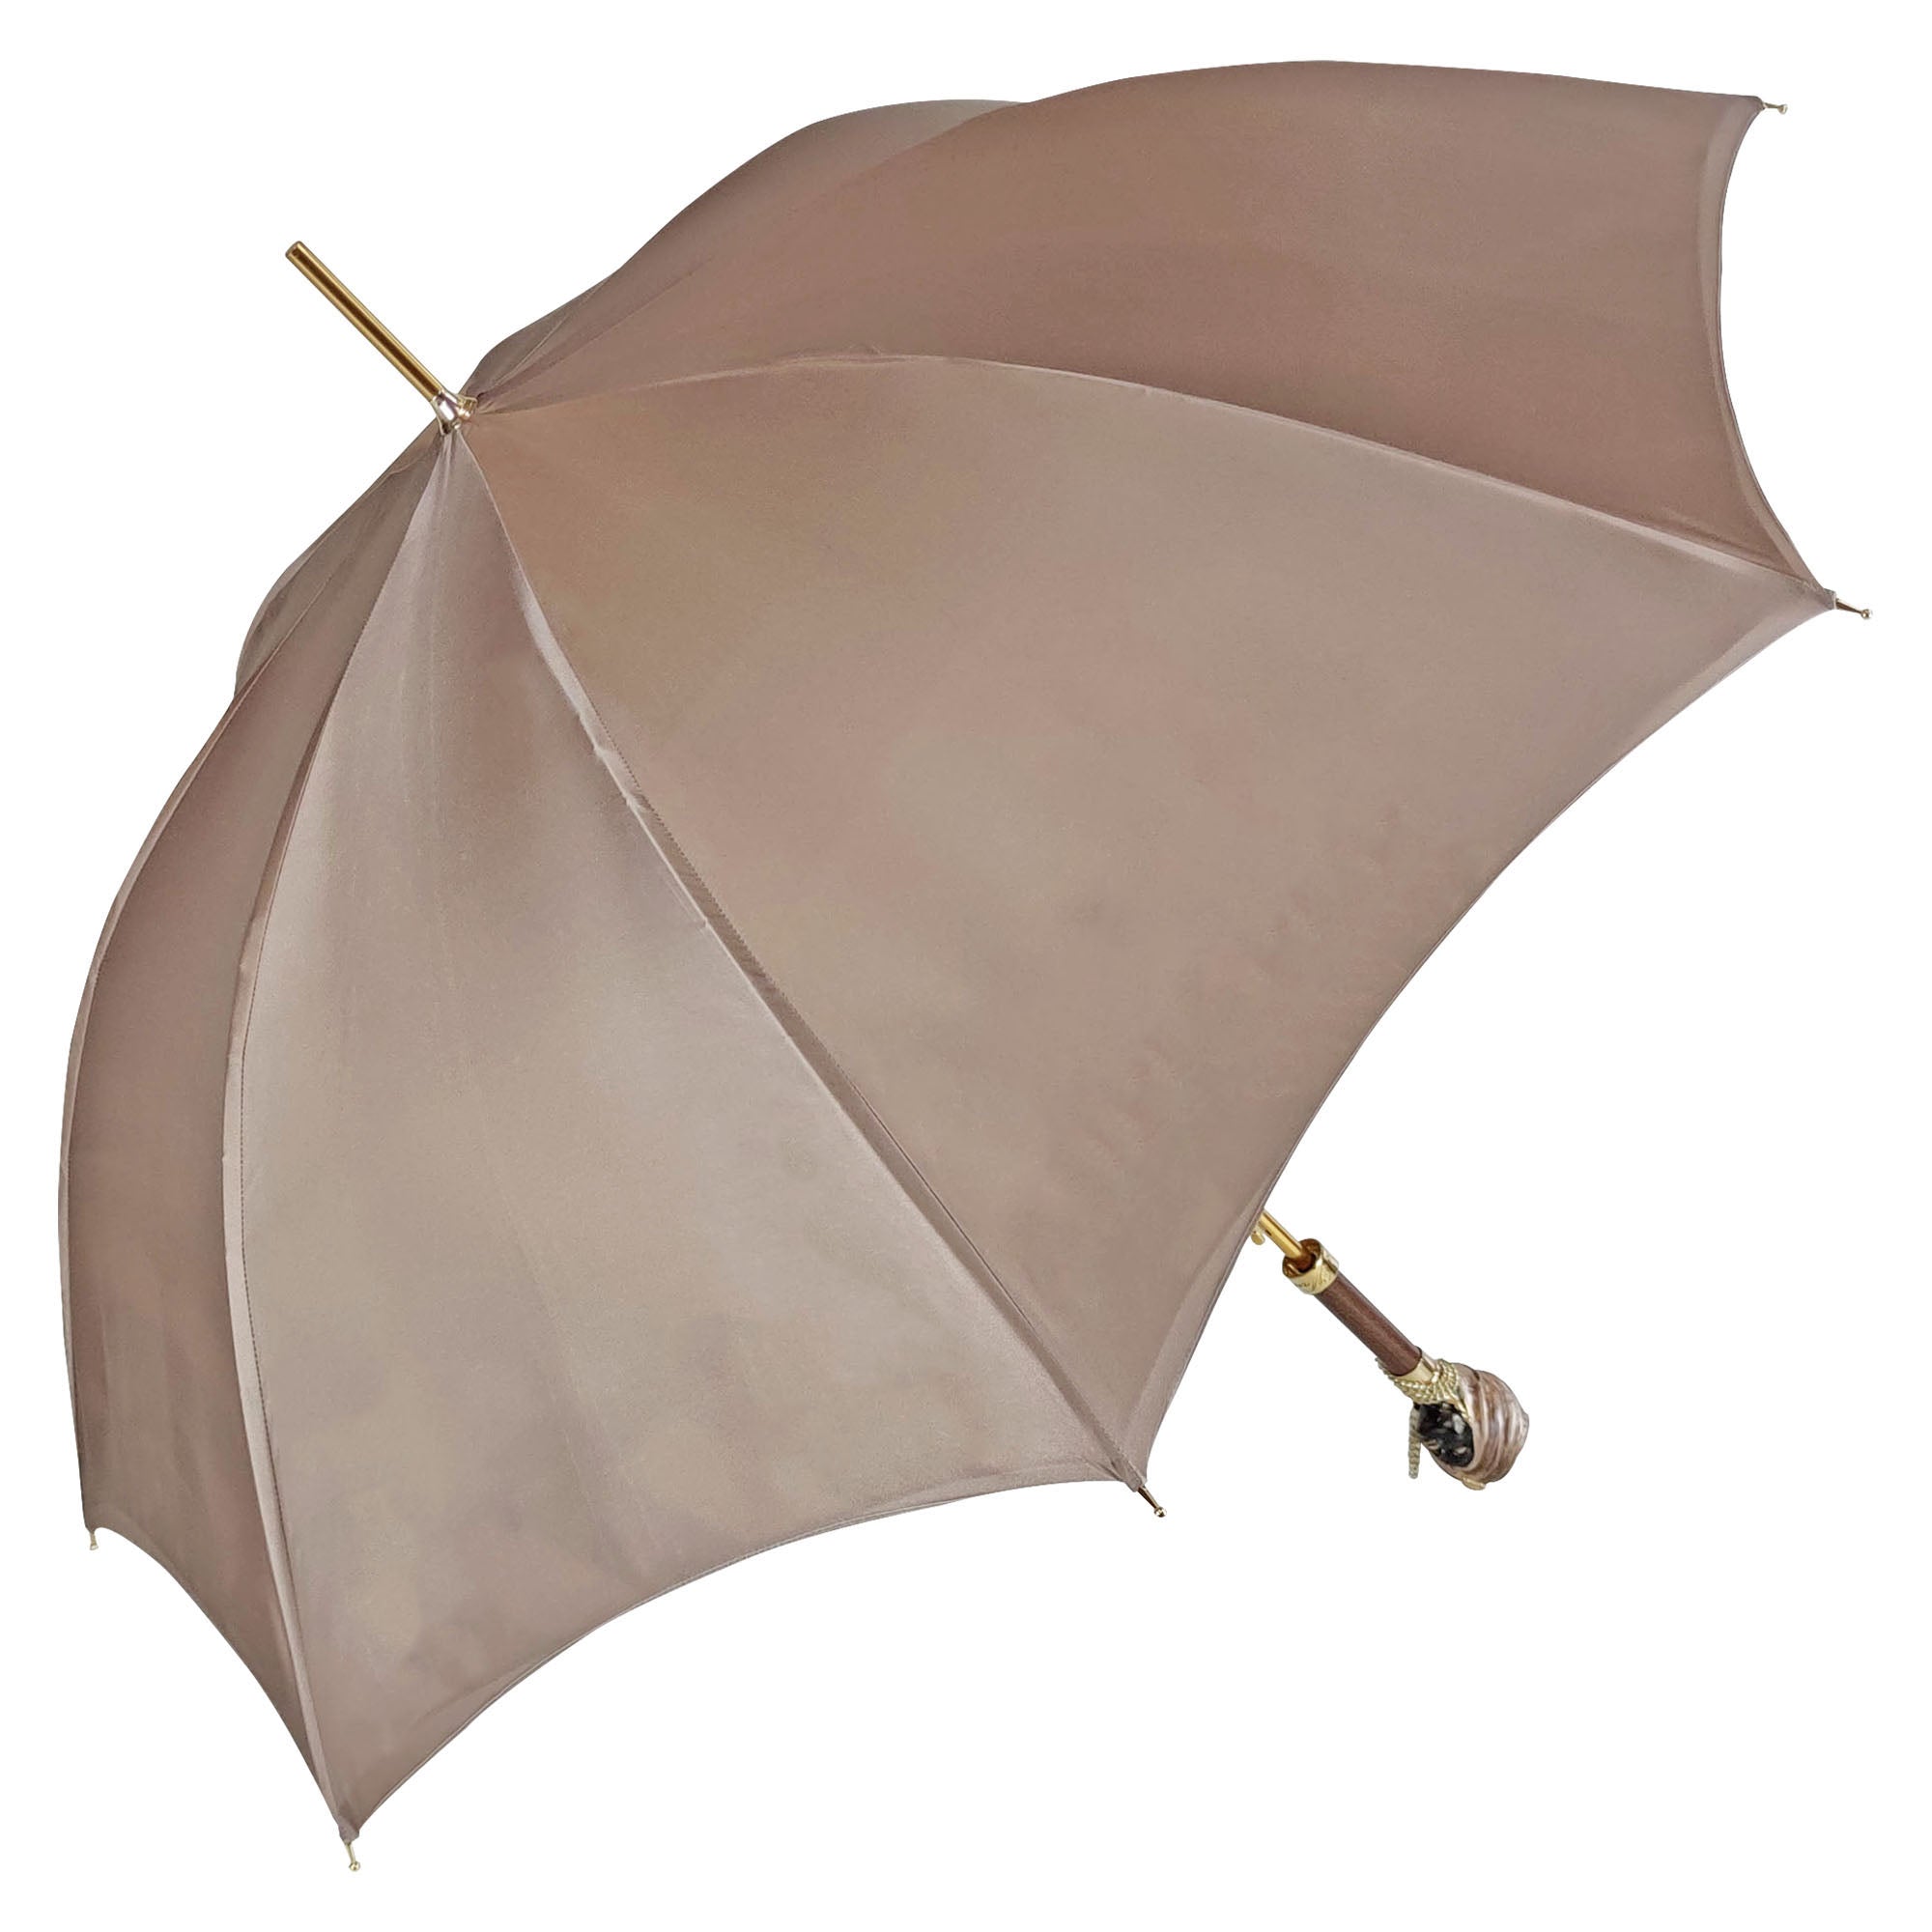 Exclusive umbrella with Classic Sicily "Testa di moro"